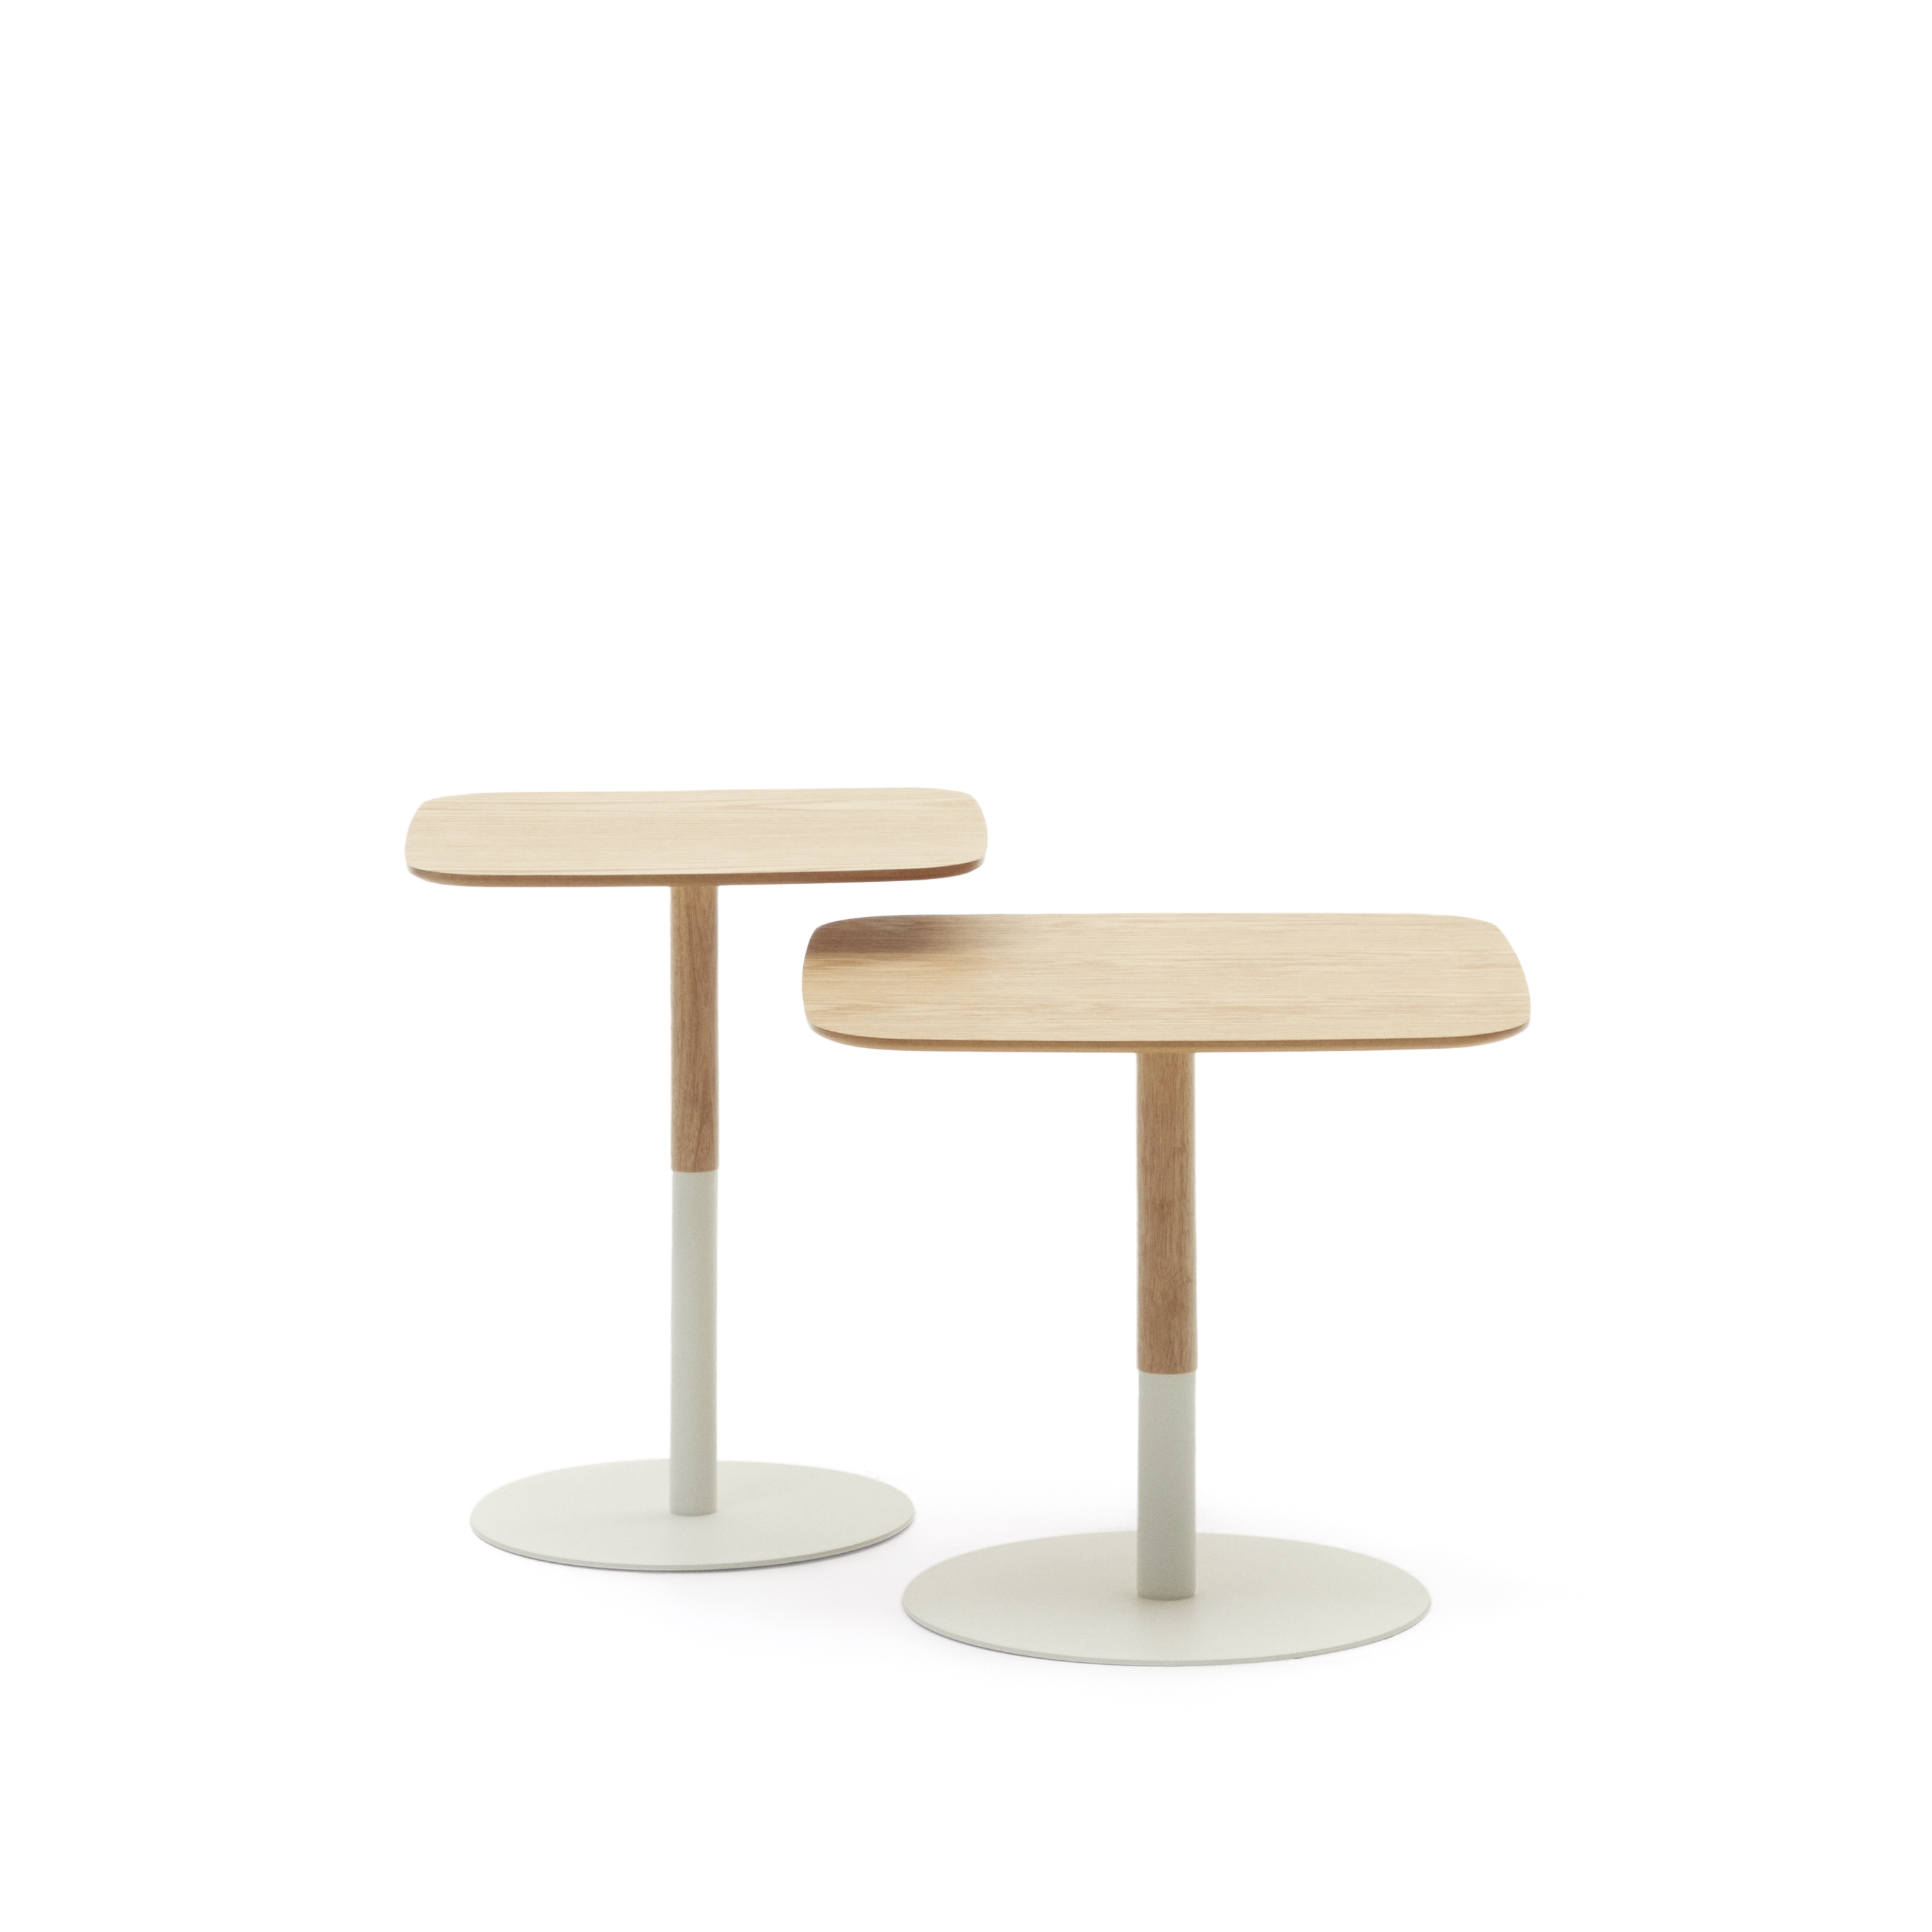 La Forma (ex Julia Grup) Набор Watse из 2 квадратных столиков из шпона дуба и матового белого металла